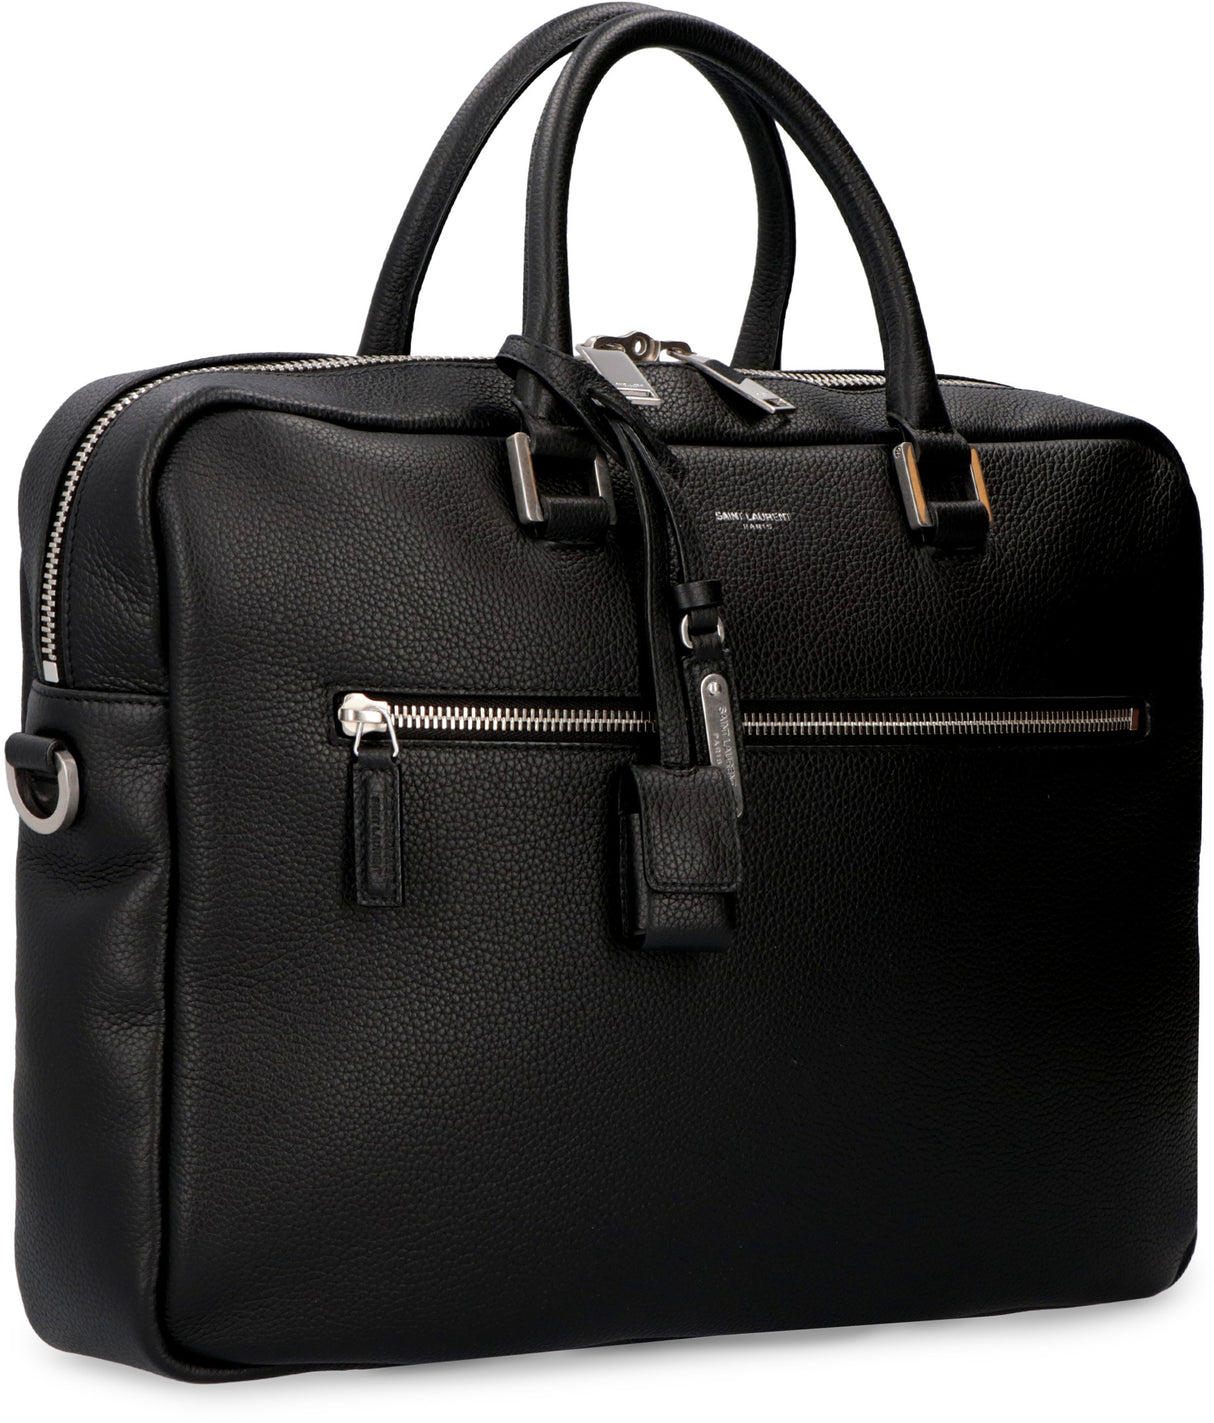 حقيبة يد جلدية فاخرة بتفاصيل شعار باللون الأسود المتعدد الاستخدامات